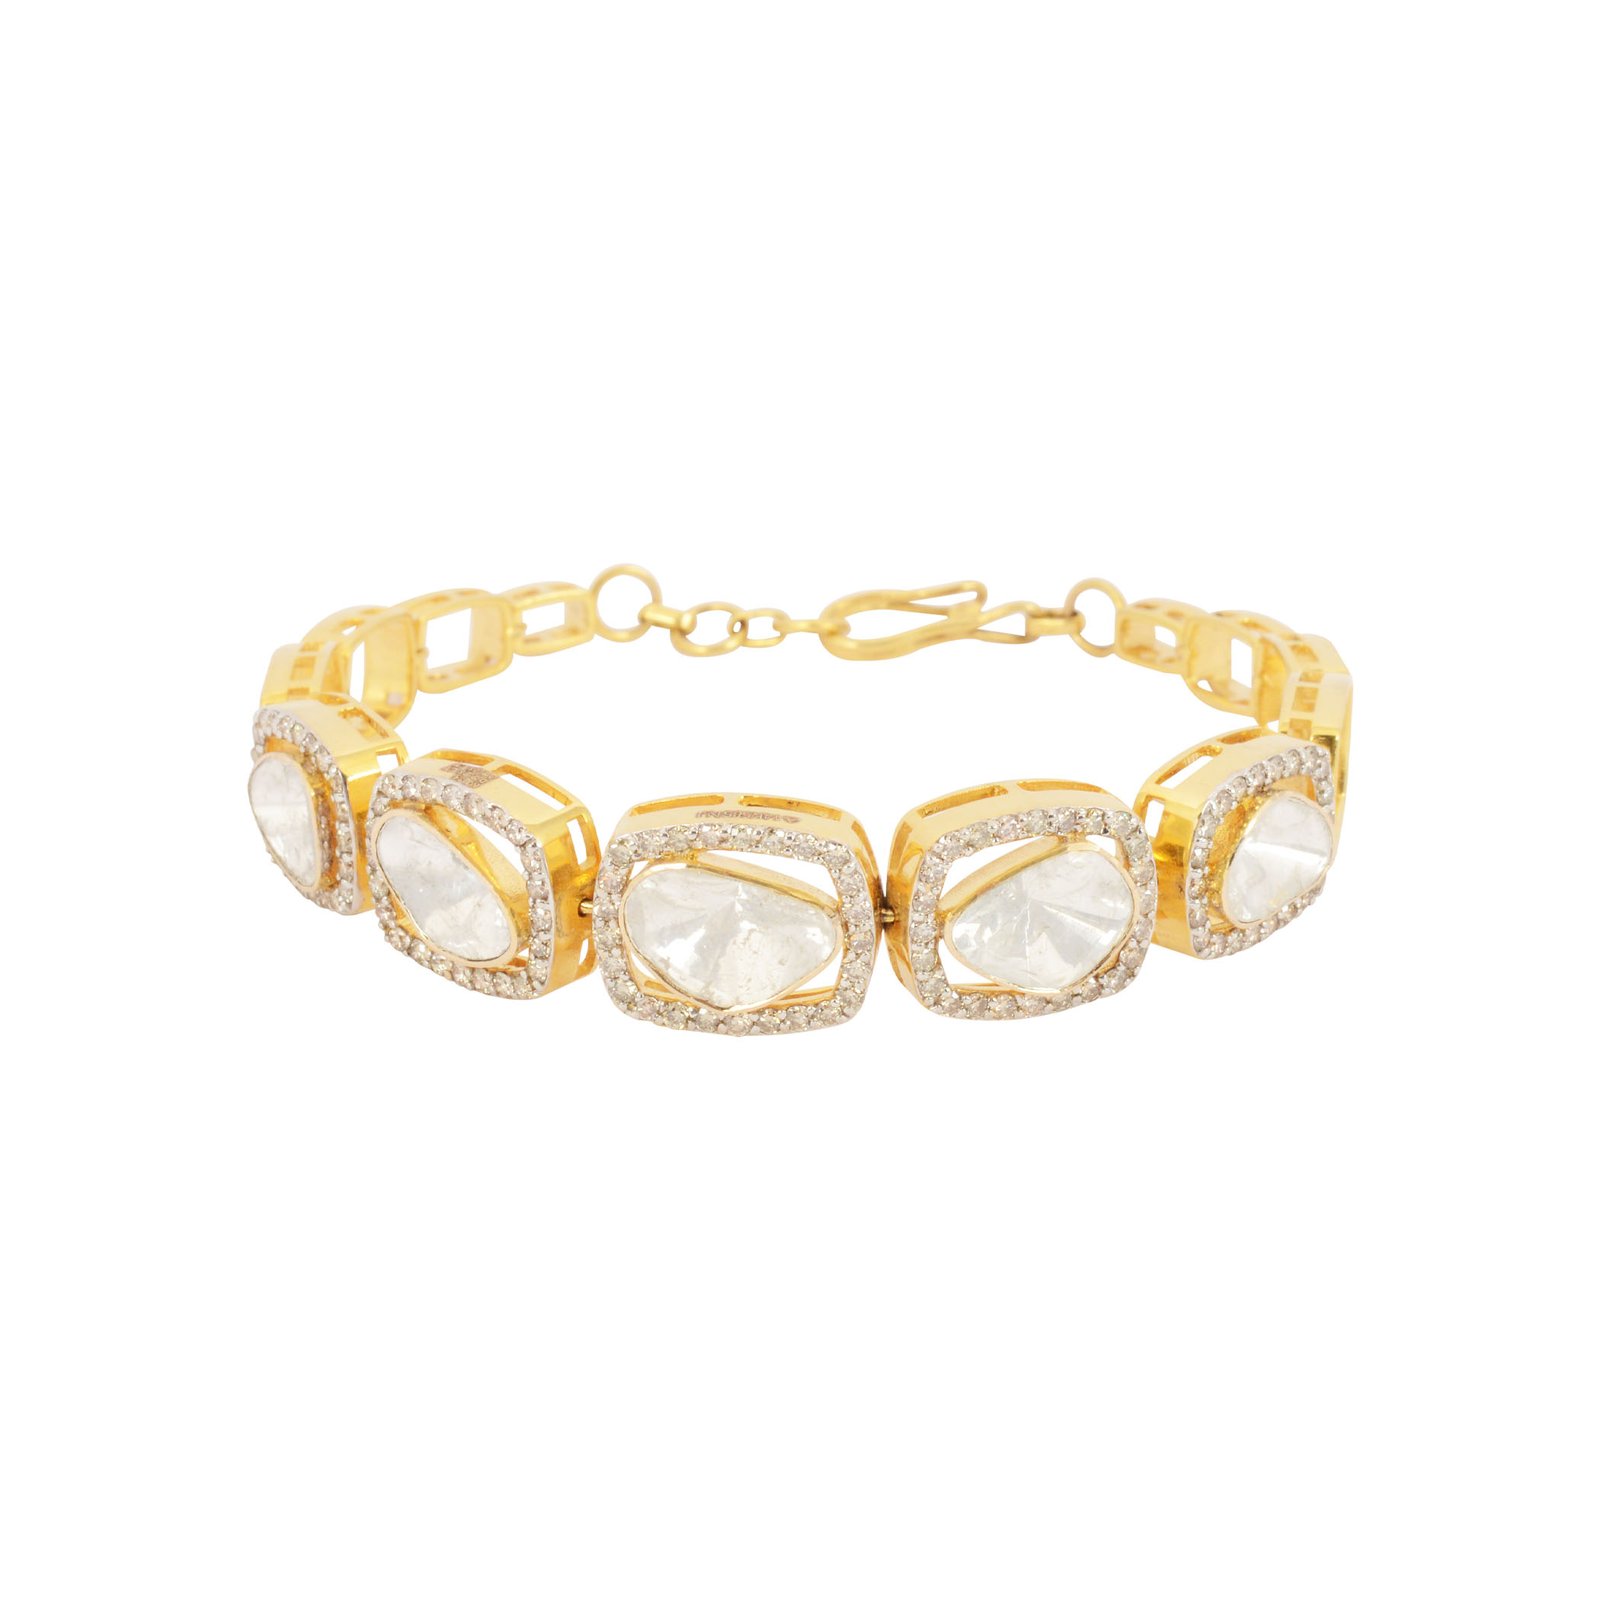 Diamond polki bracelet - Navkkar Jewellers